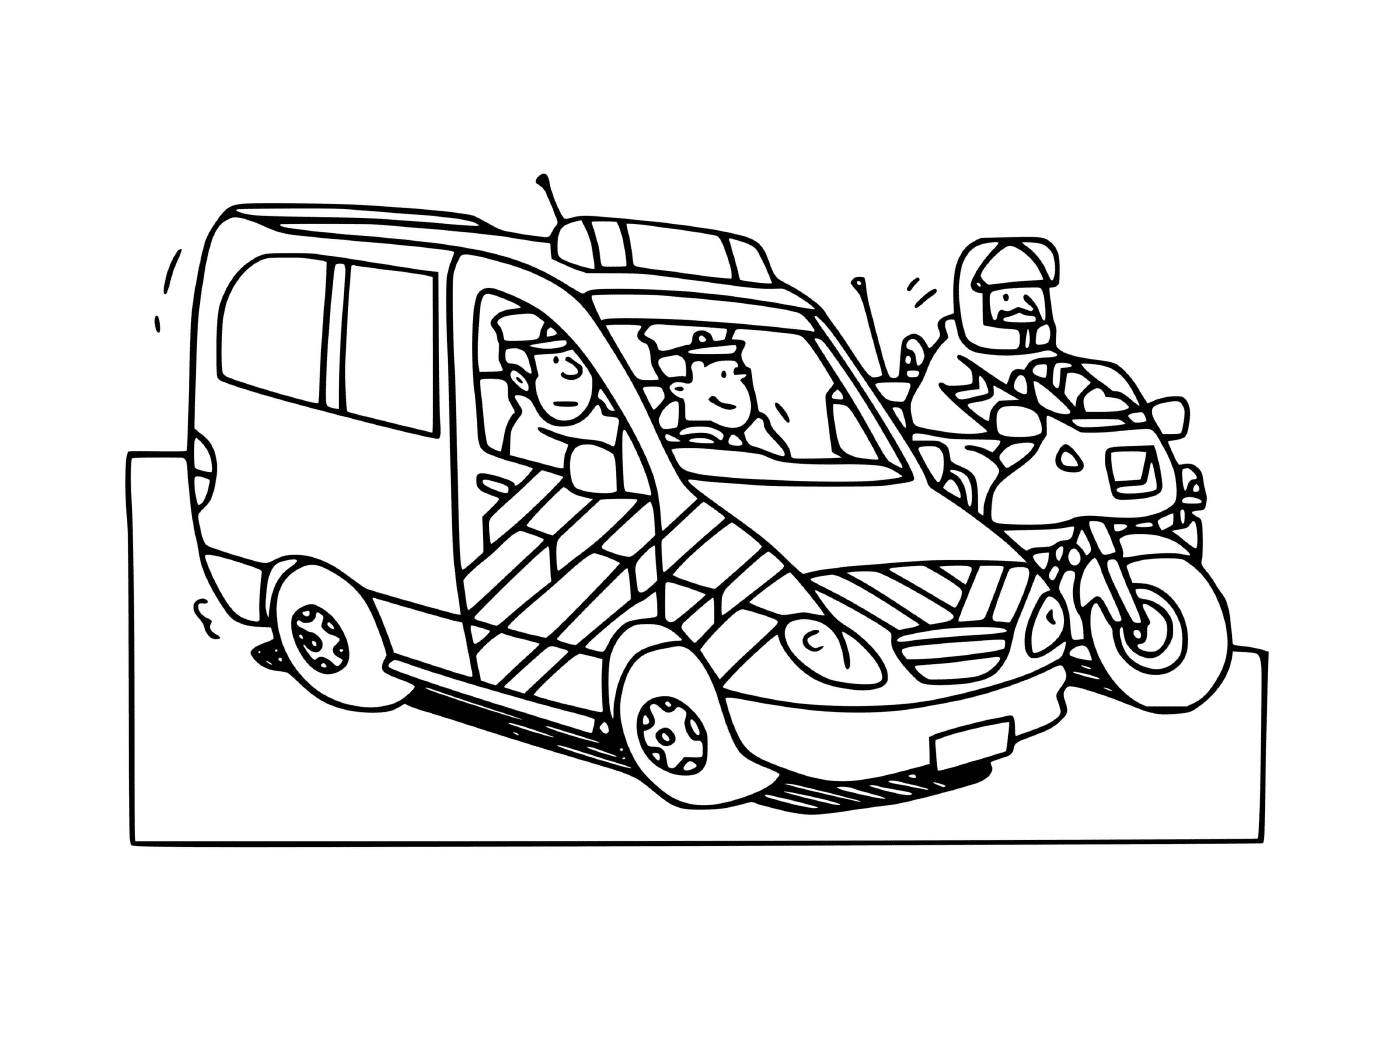  पुलिस साइकिल के साथ फ्रांस की पुलिस कार 